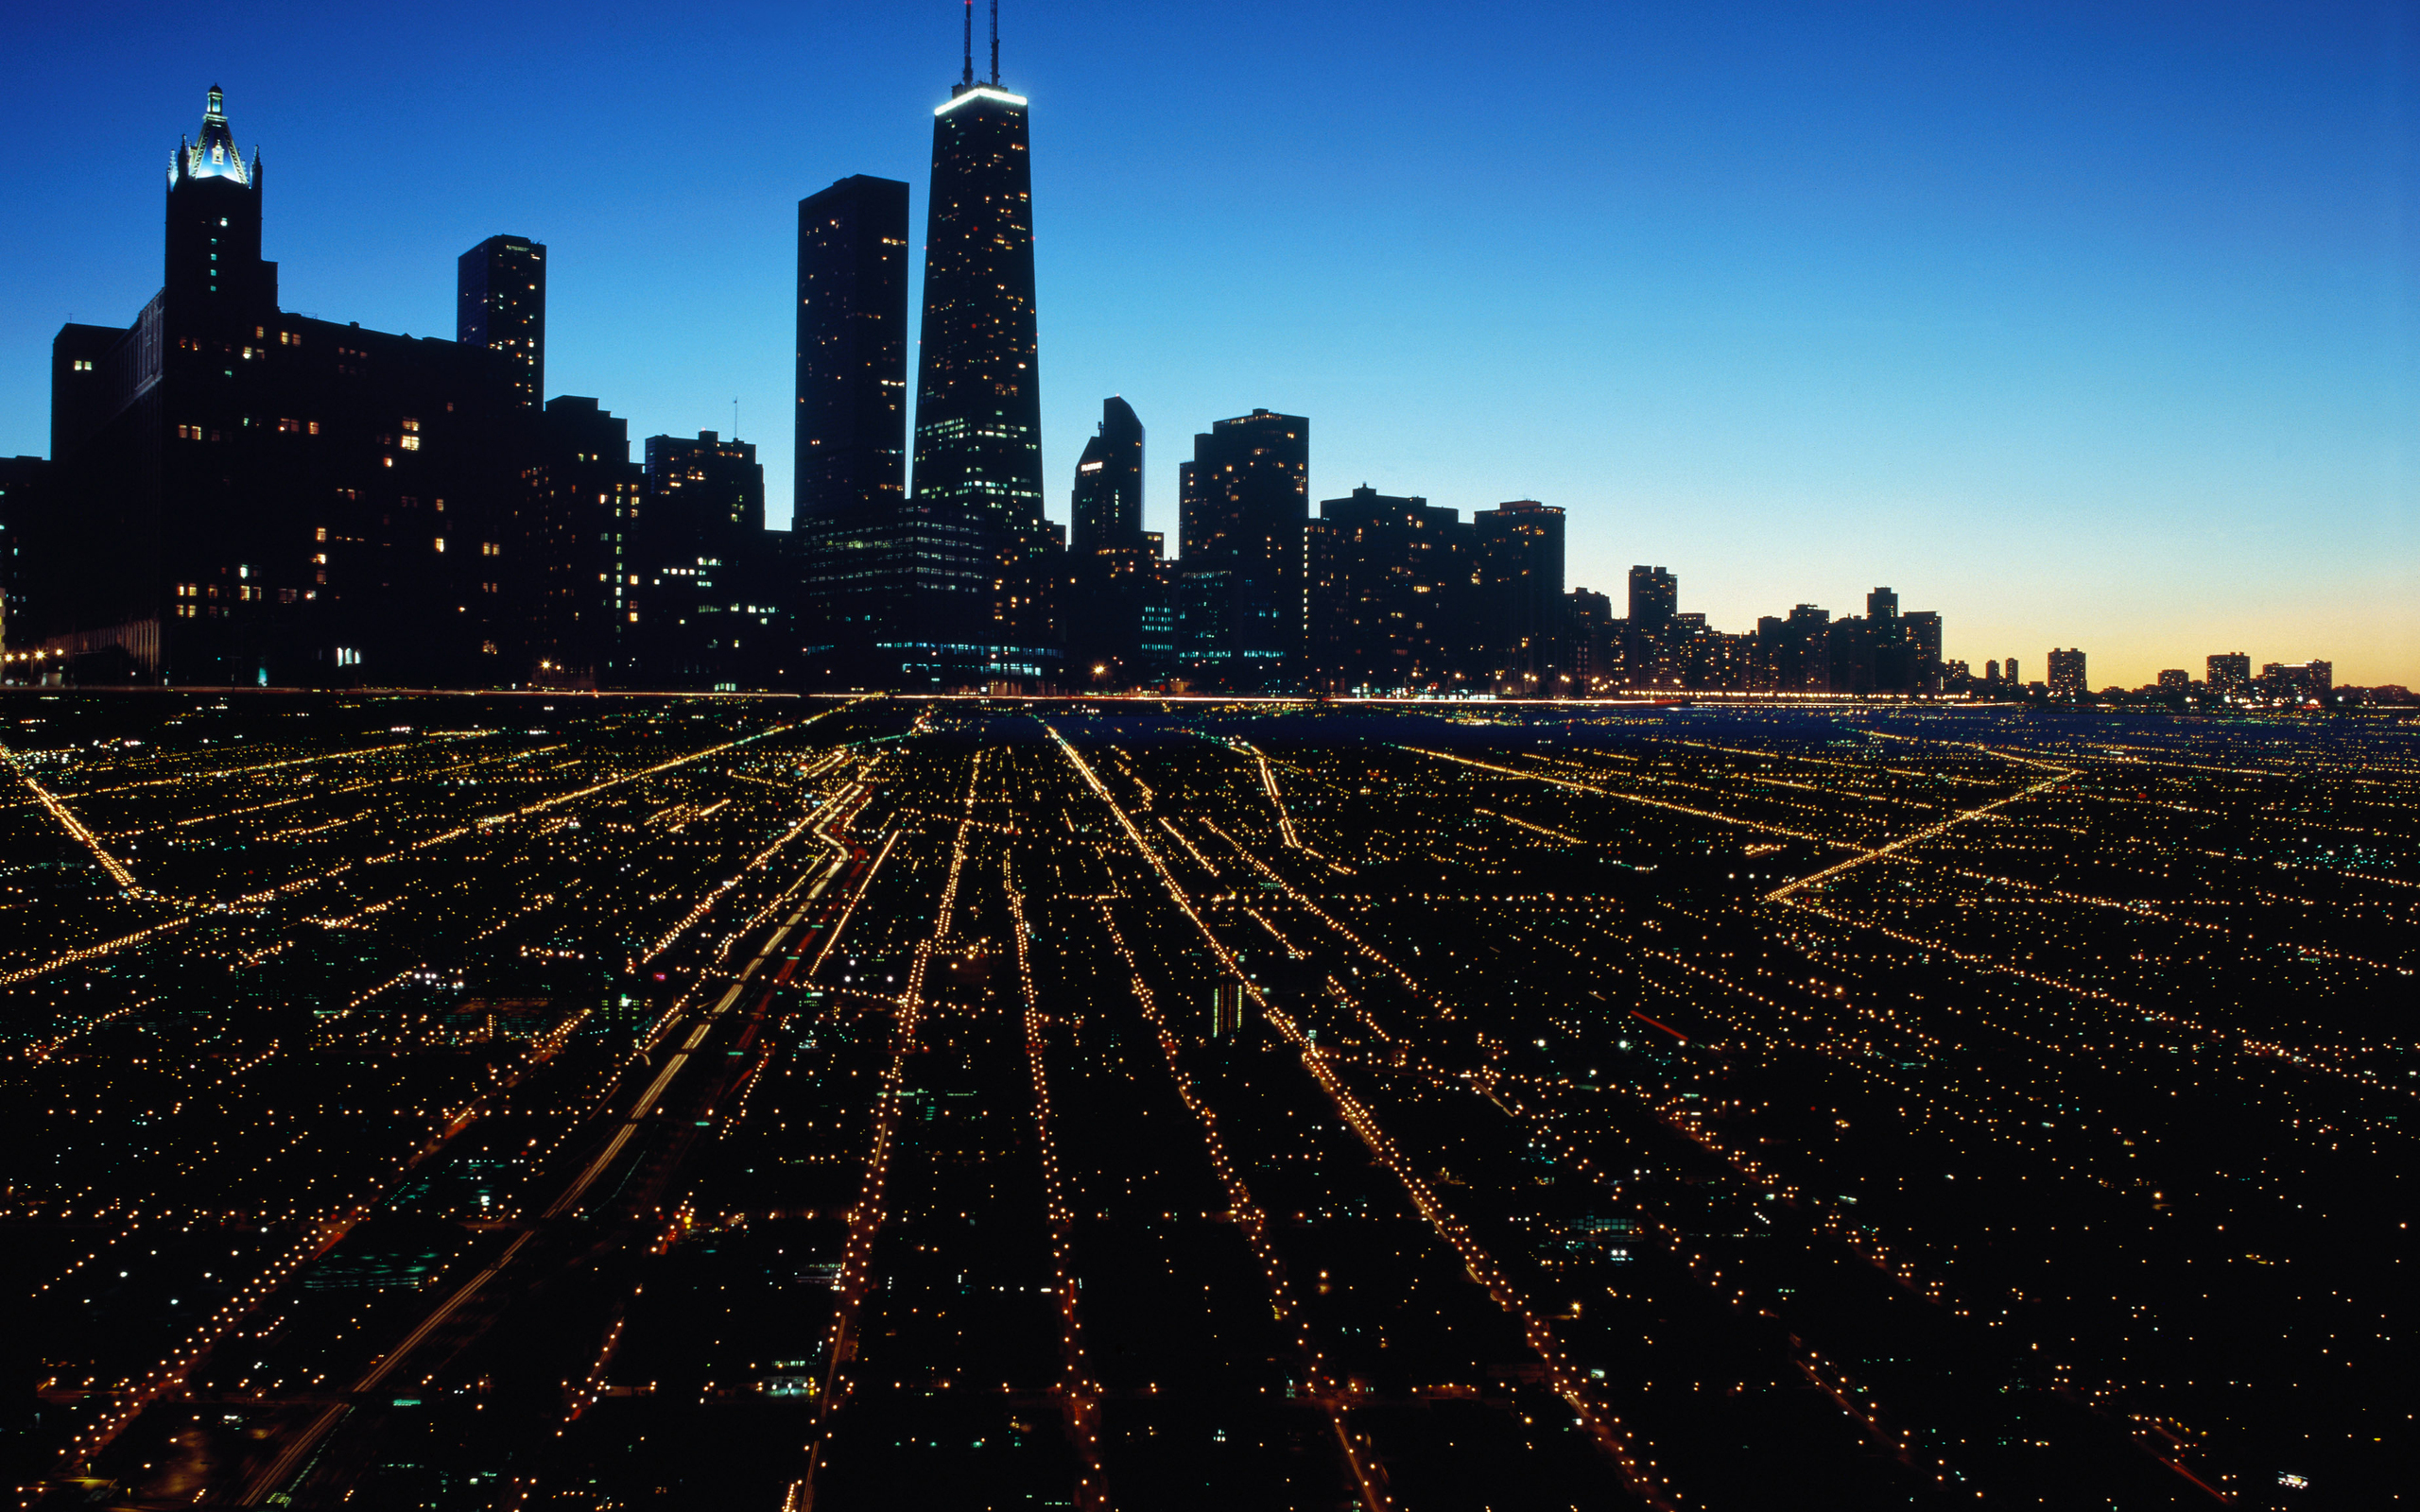 Ночной город Чикаго